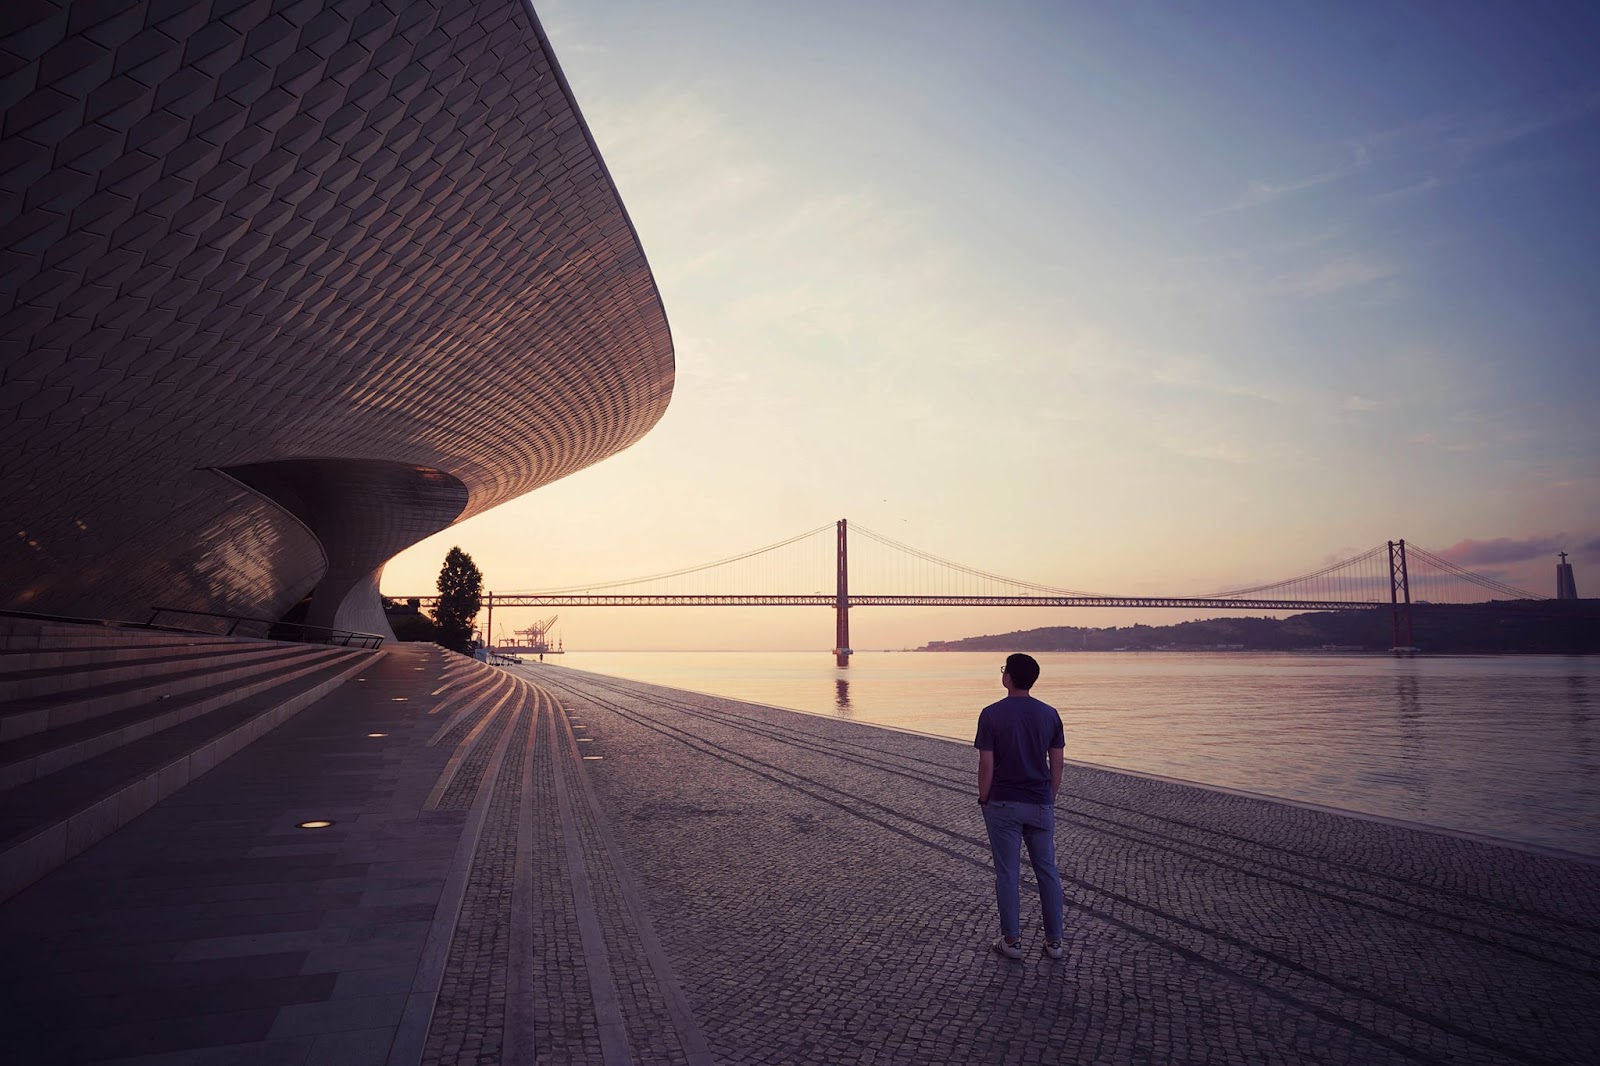 Khám phá Lisbon xinh đẹp bên dòng sông Tagus qua lăng kính du khách Việt - 10